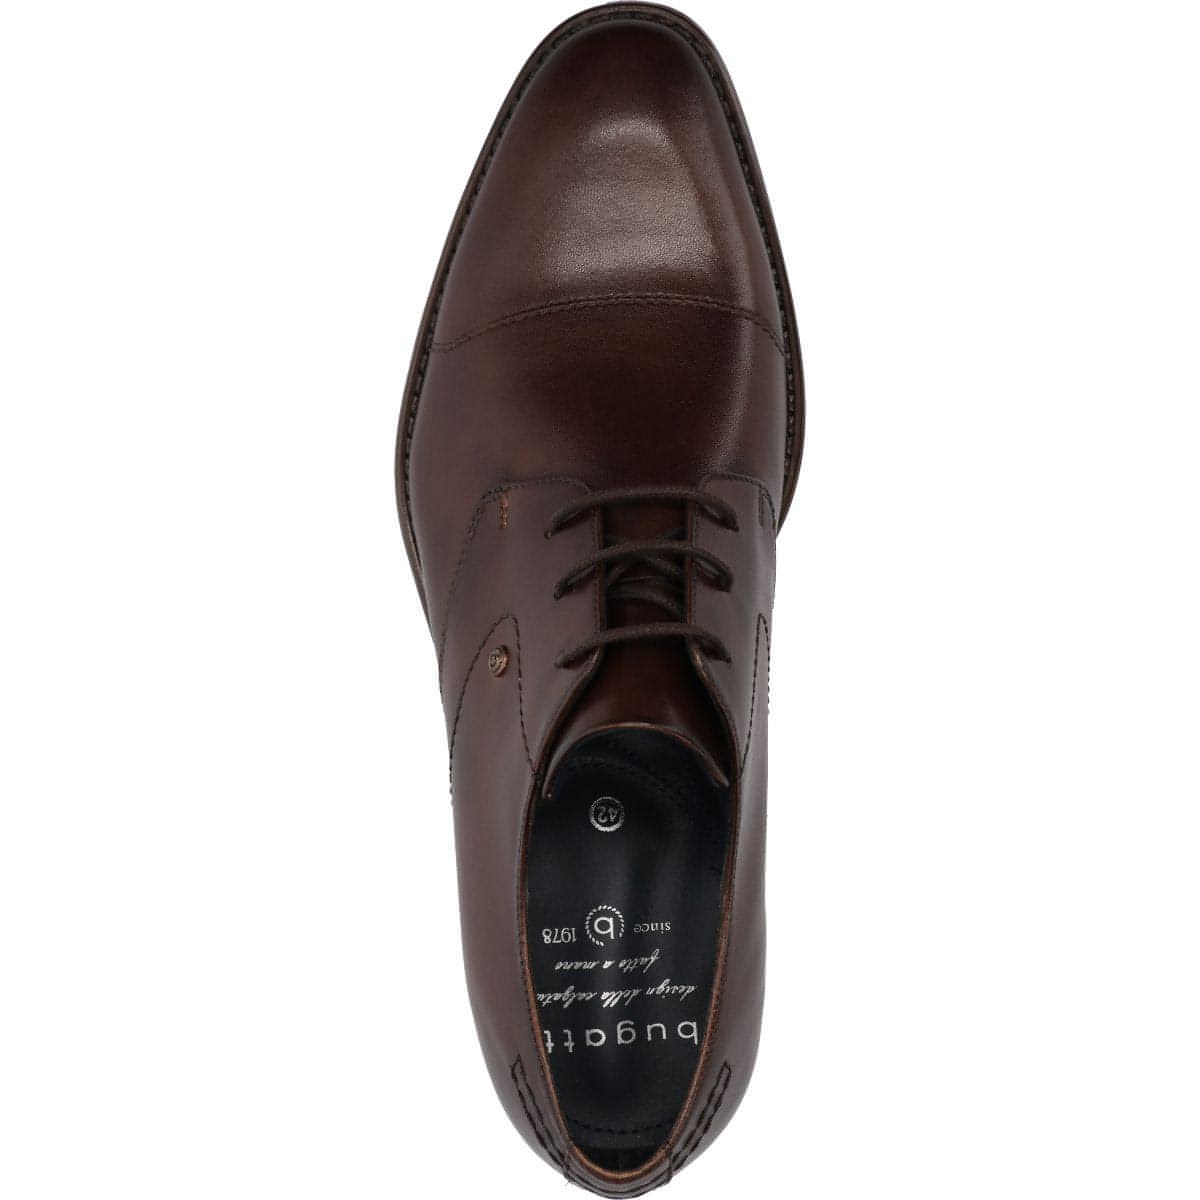 BUGATTI vyriški rudi klasikiniai batai Rinaldo Eco formal